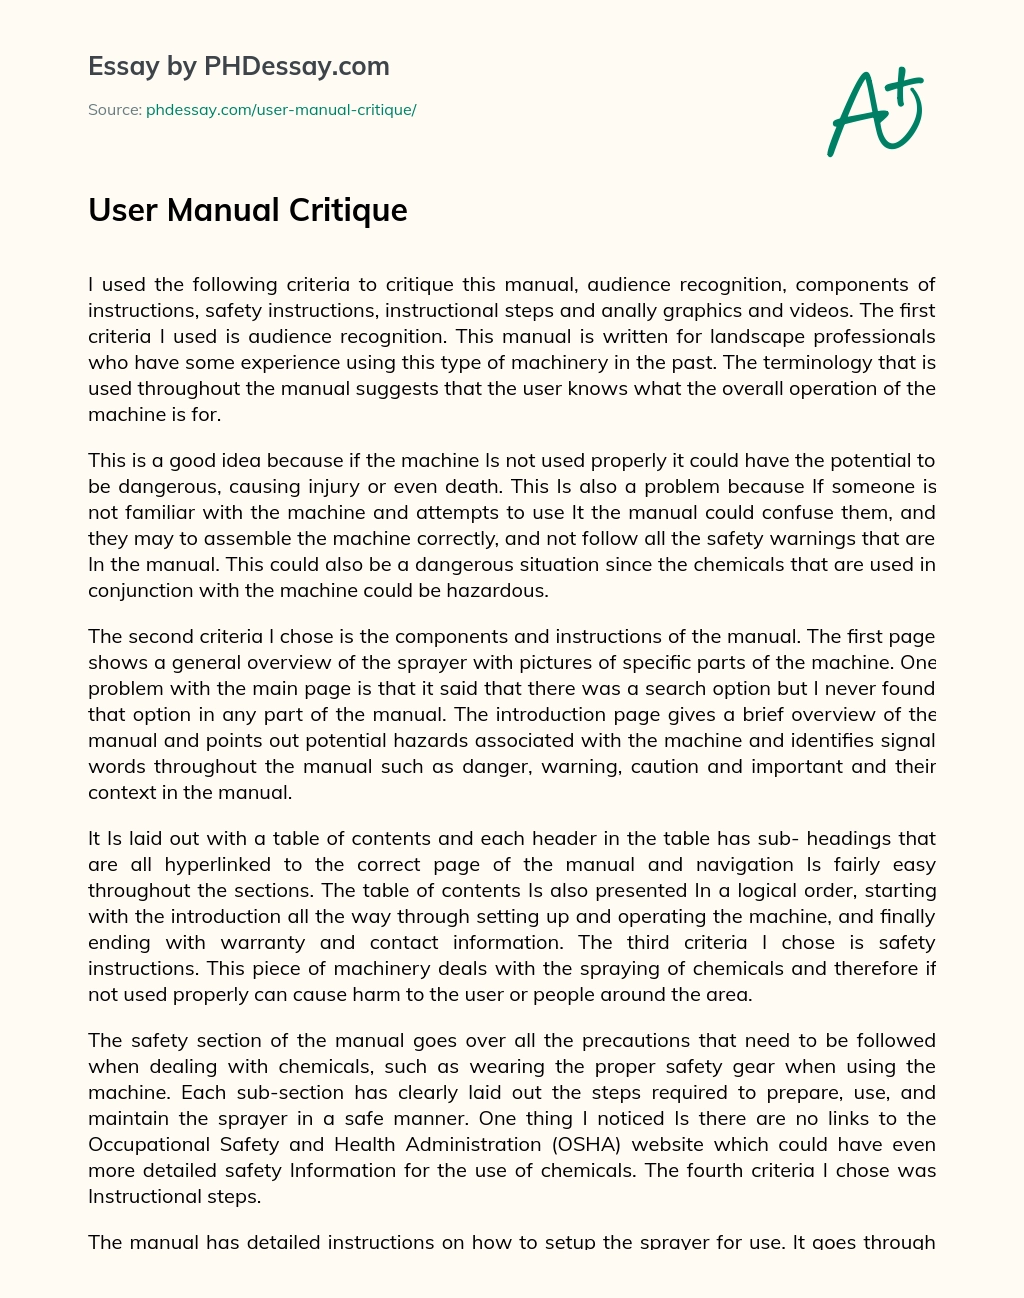 User Manual Critique essay